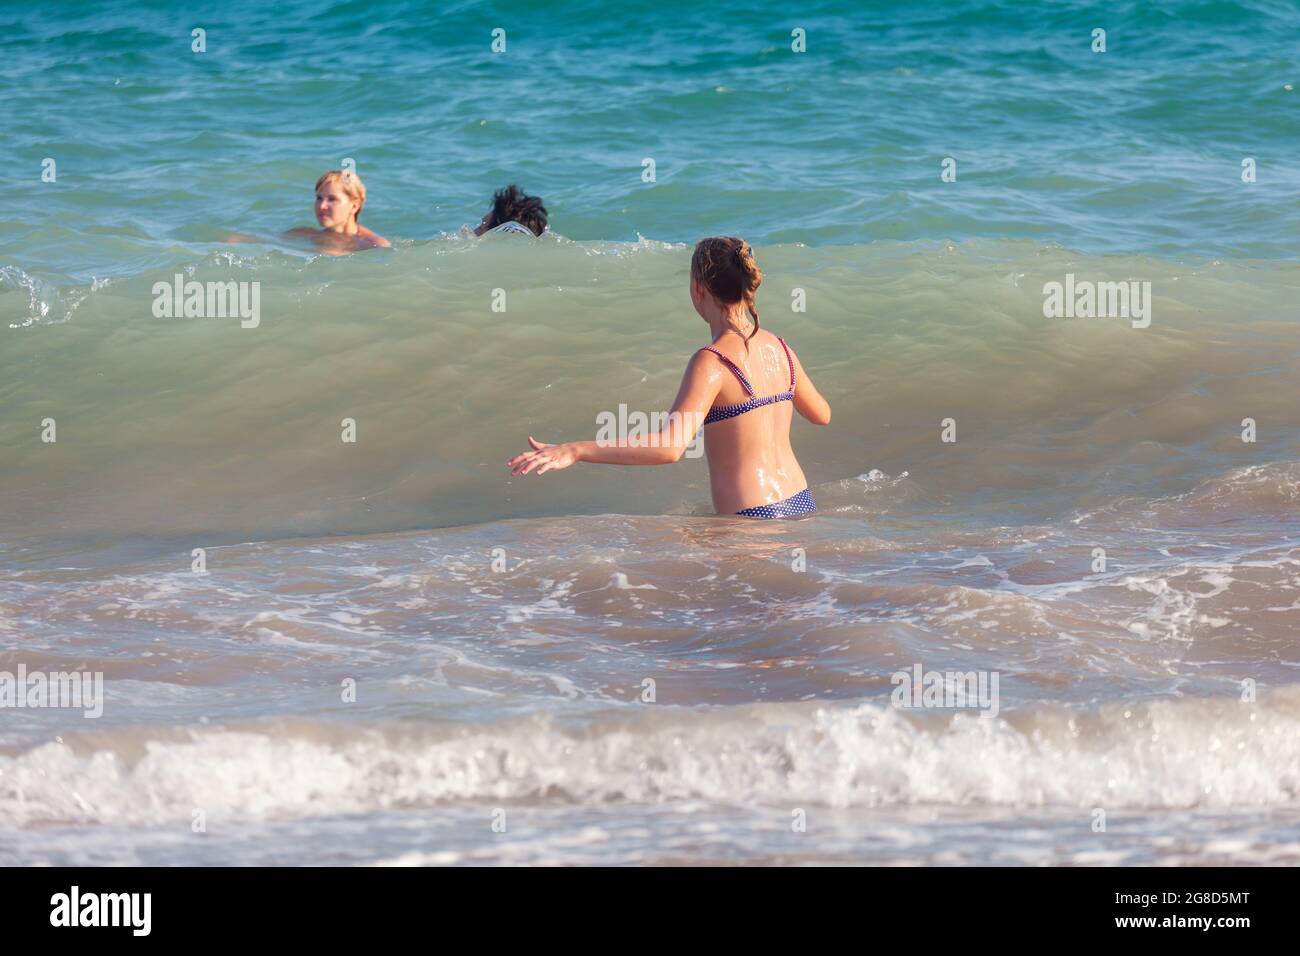 Antalya, Türkei-26. August 2013: Fröhliches, glückliches junges Mädchen, das auf die große Welle im Meer wartet, während zwei andere Personen im Hintergrund schwimmen. Stockfoto